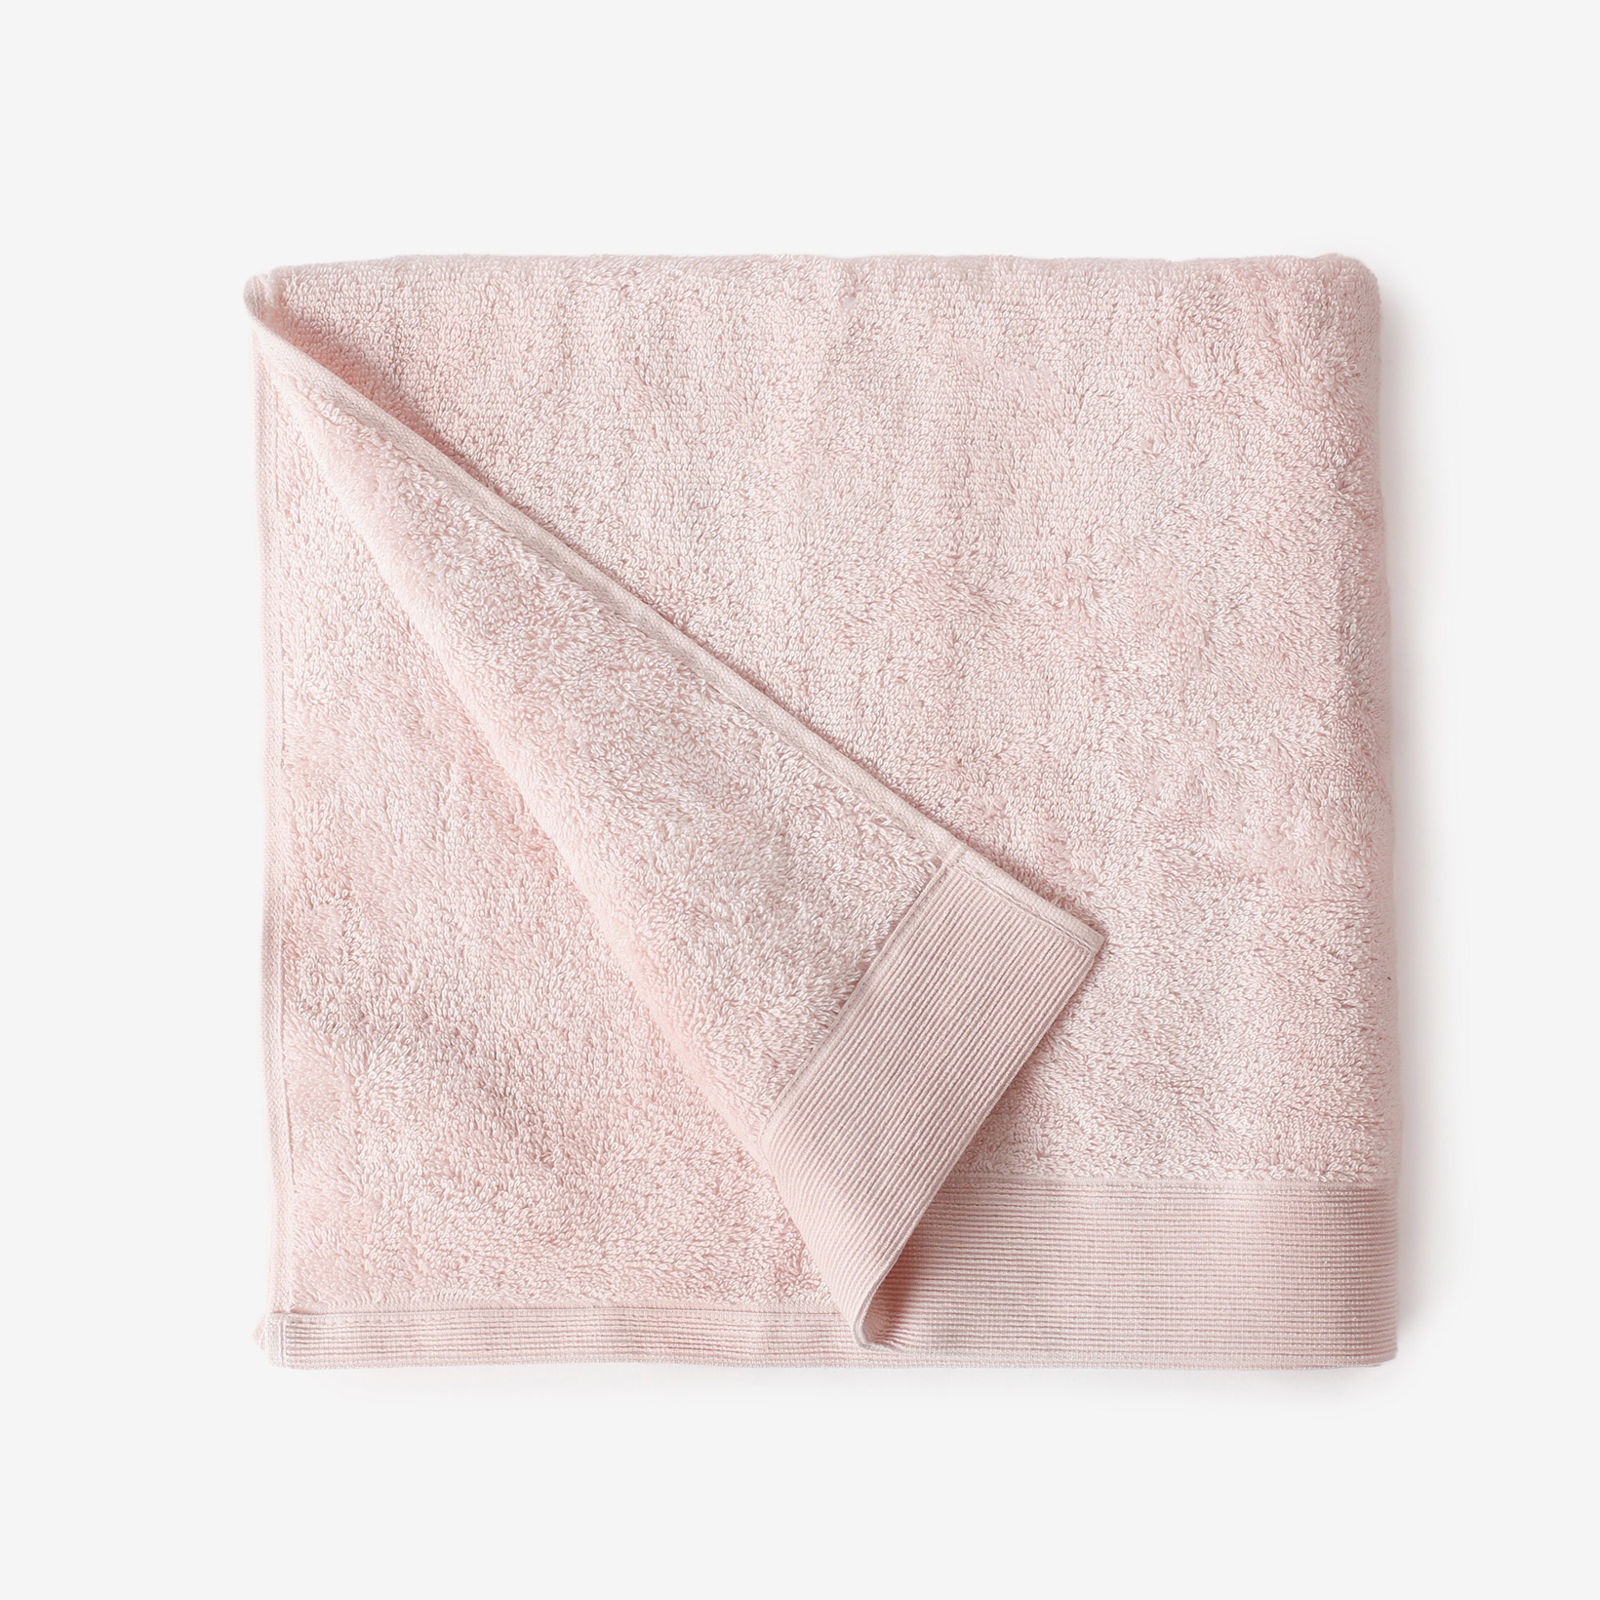 Modalový ručník/osuška s přírodním vláknem - pastelově růžový